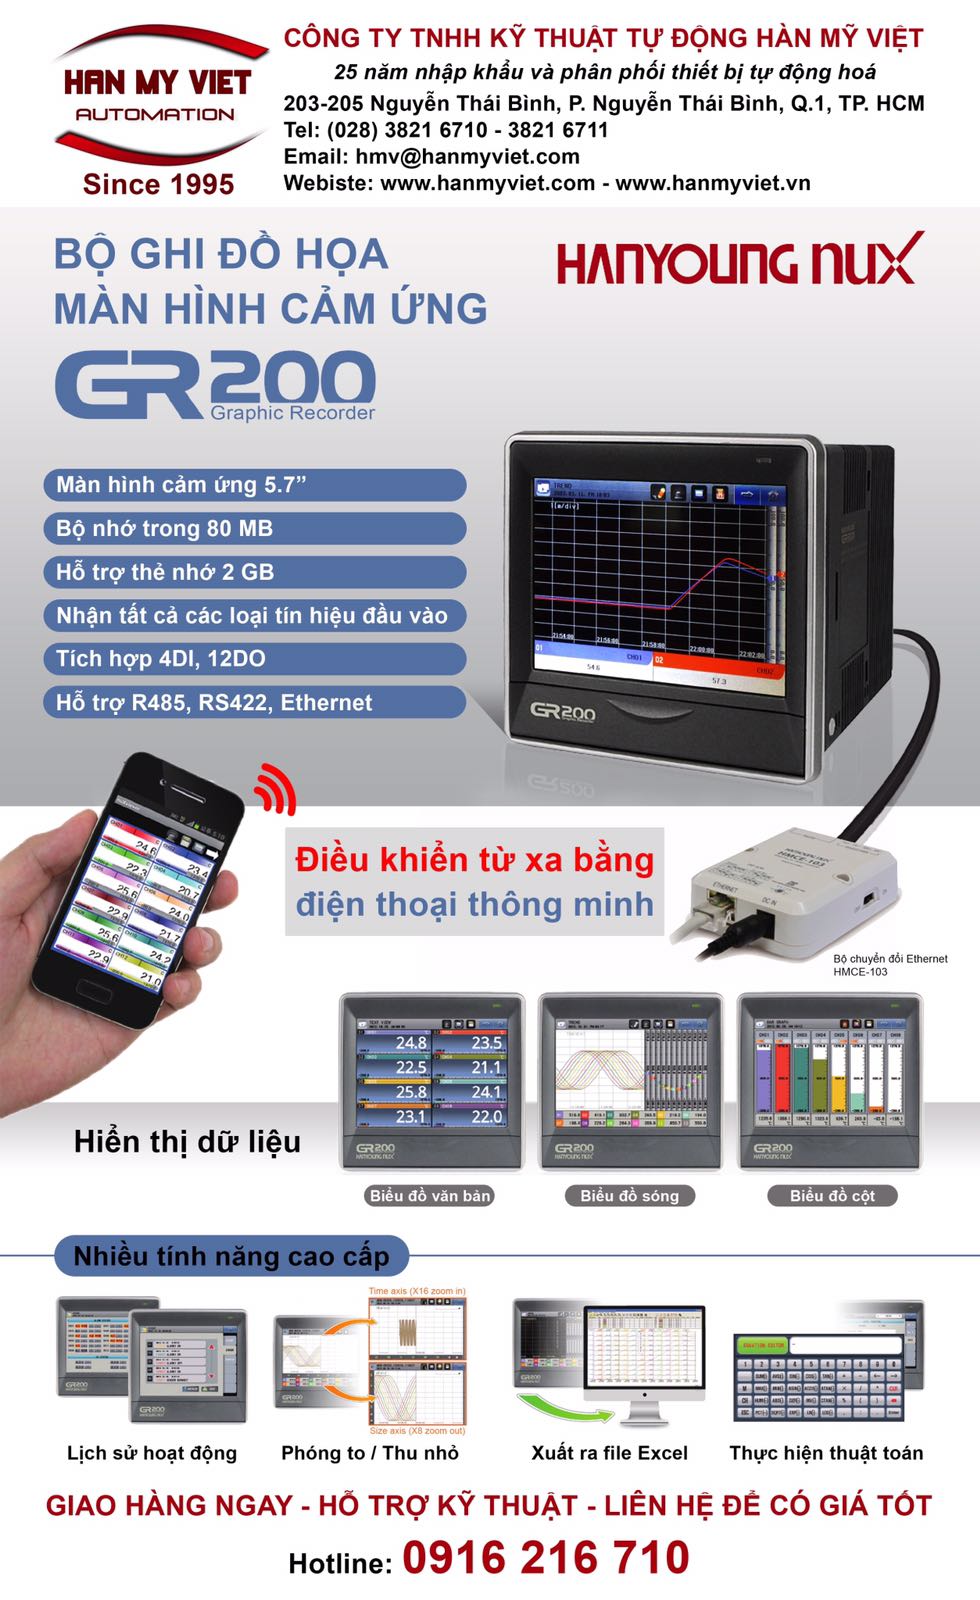 Bộ ghi dữ liệu màn hình cảm ứng Hanyoung GR200 series 